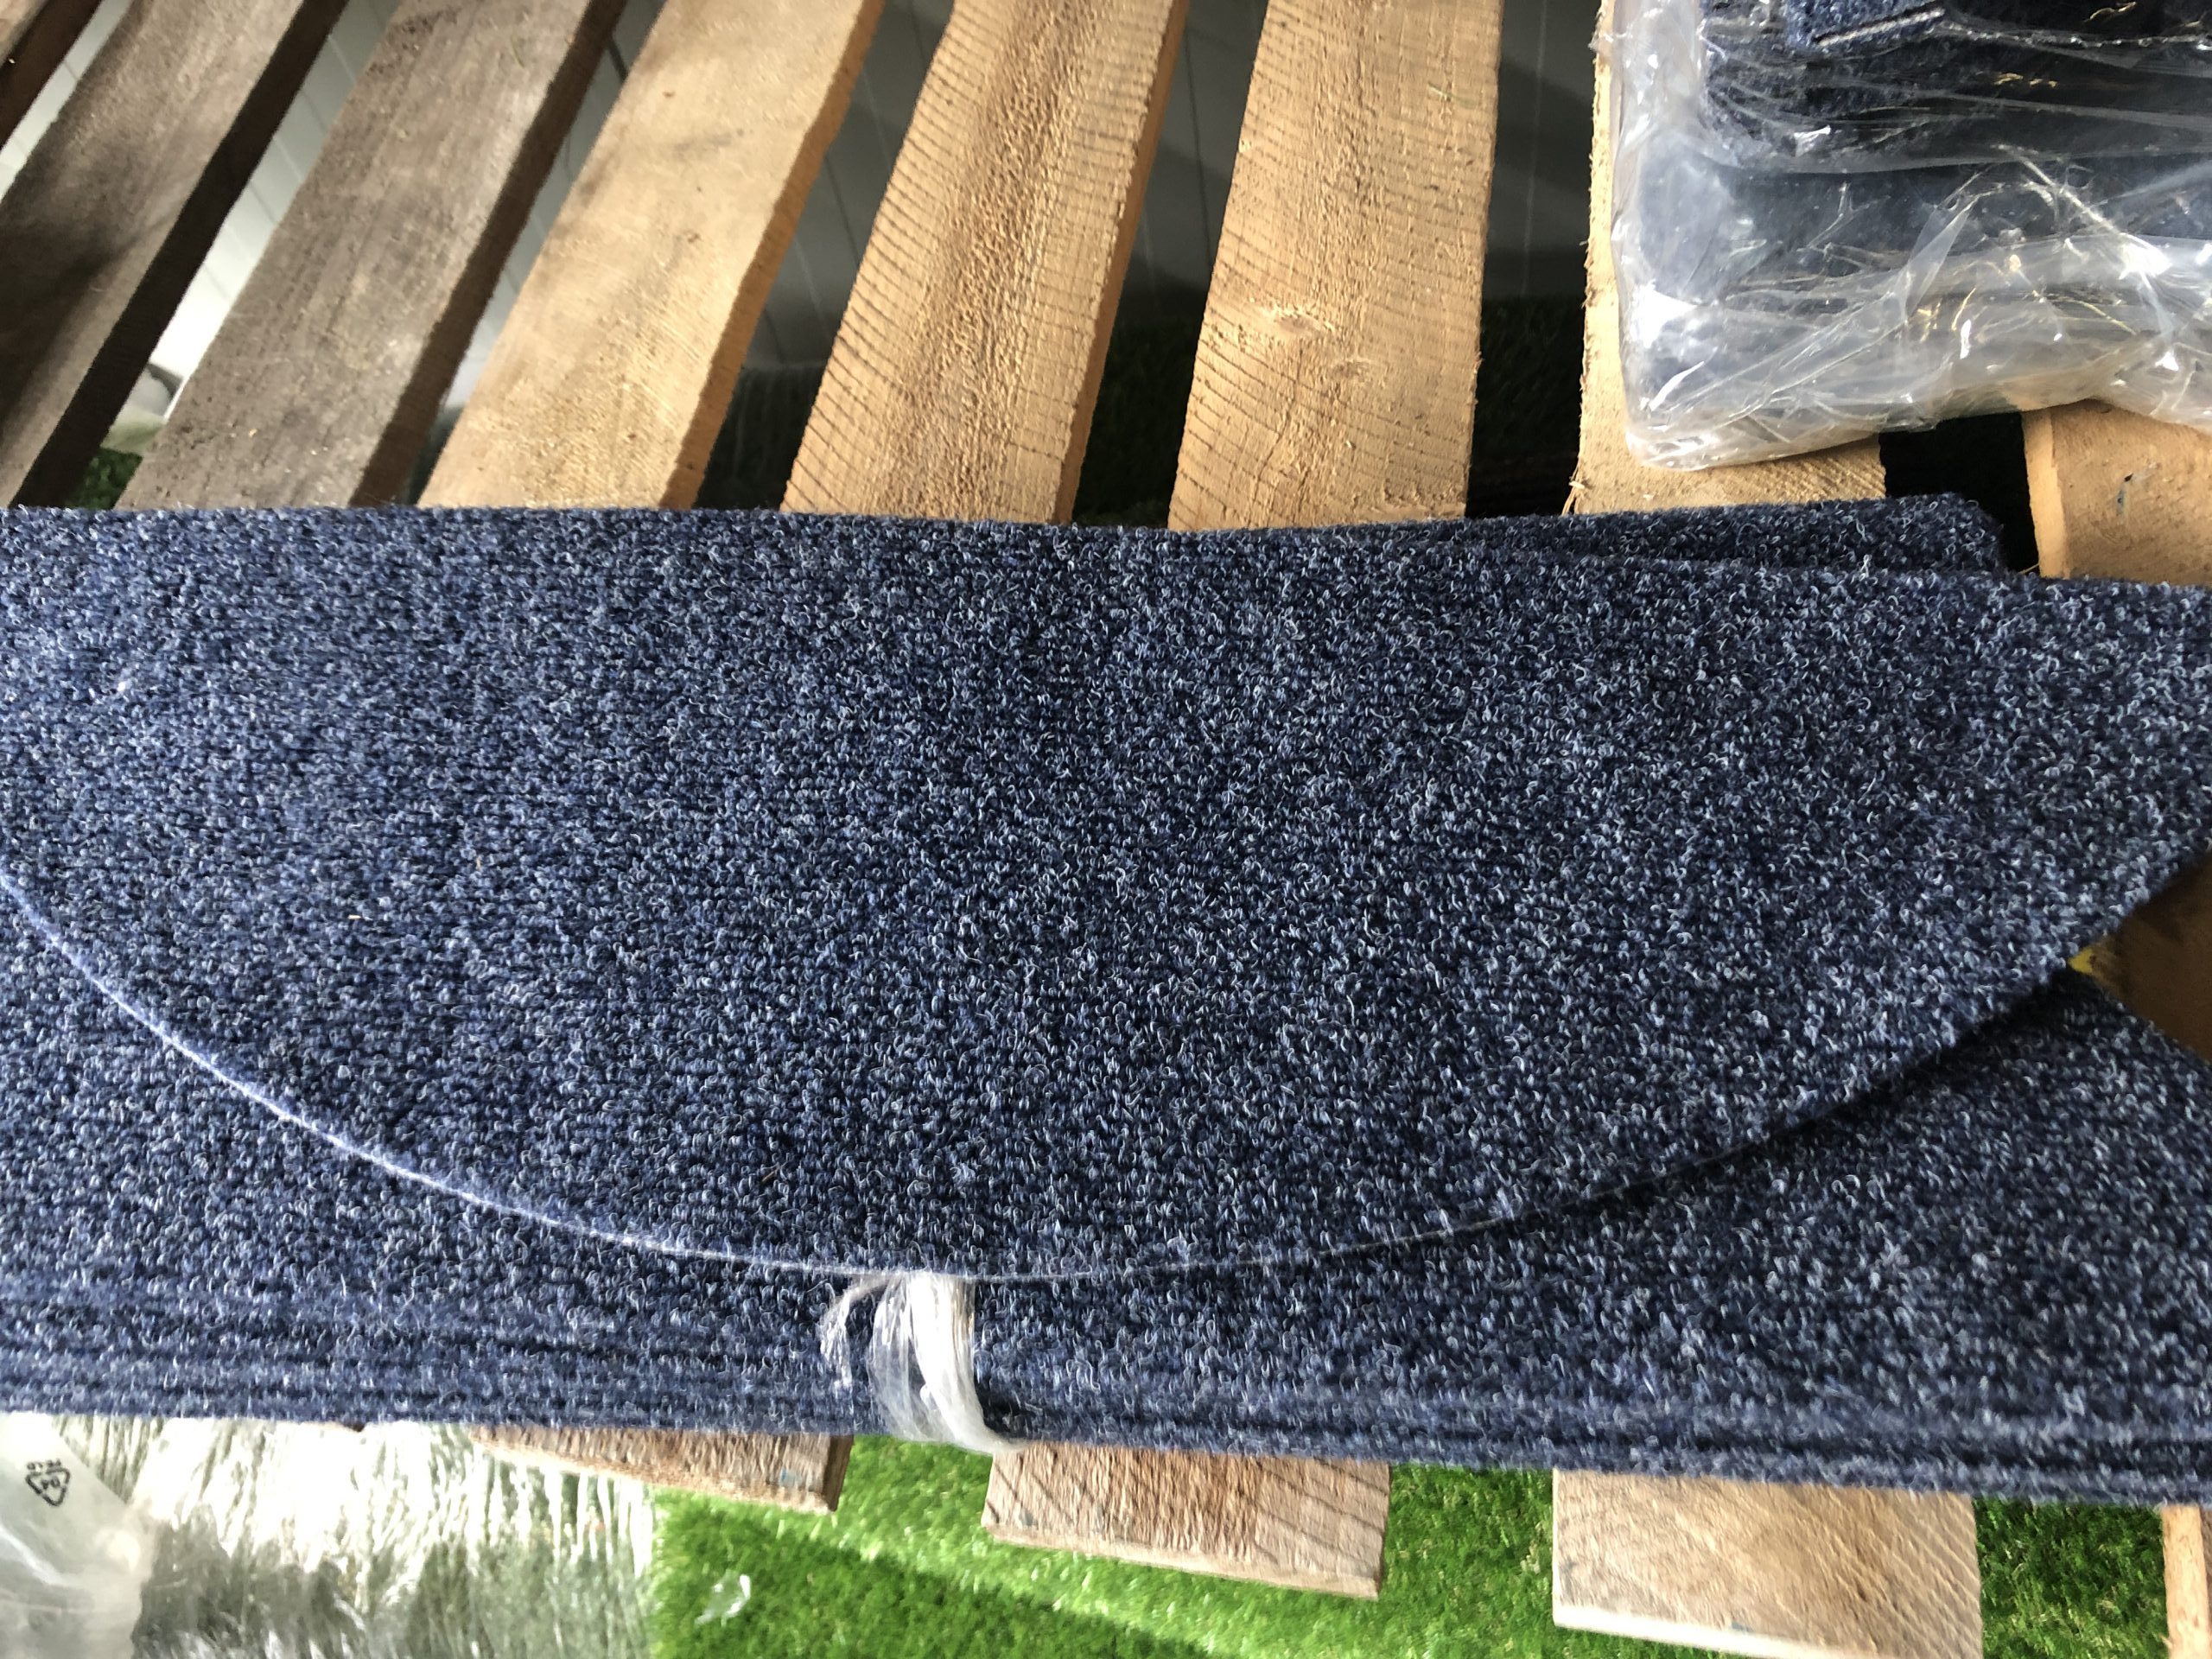 Het is goedkoop Gymnast In het algemeen v)Trapmatten 15 stuks kleur Blauw € 2 p/st – Langenbach tapijt | De  goedkoopste leverancier van karpetten en vloerkleden. Kuntgras kunst gras  voordelig